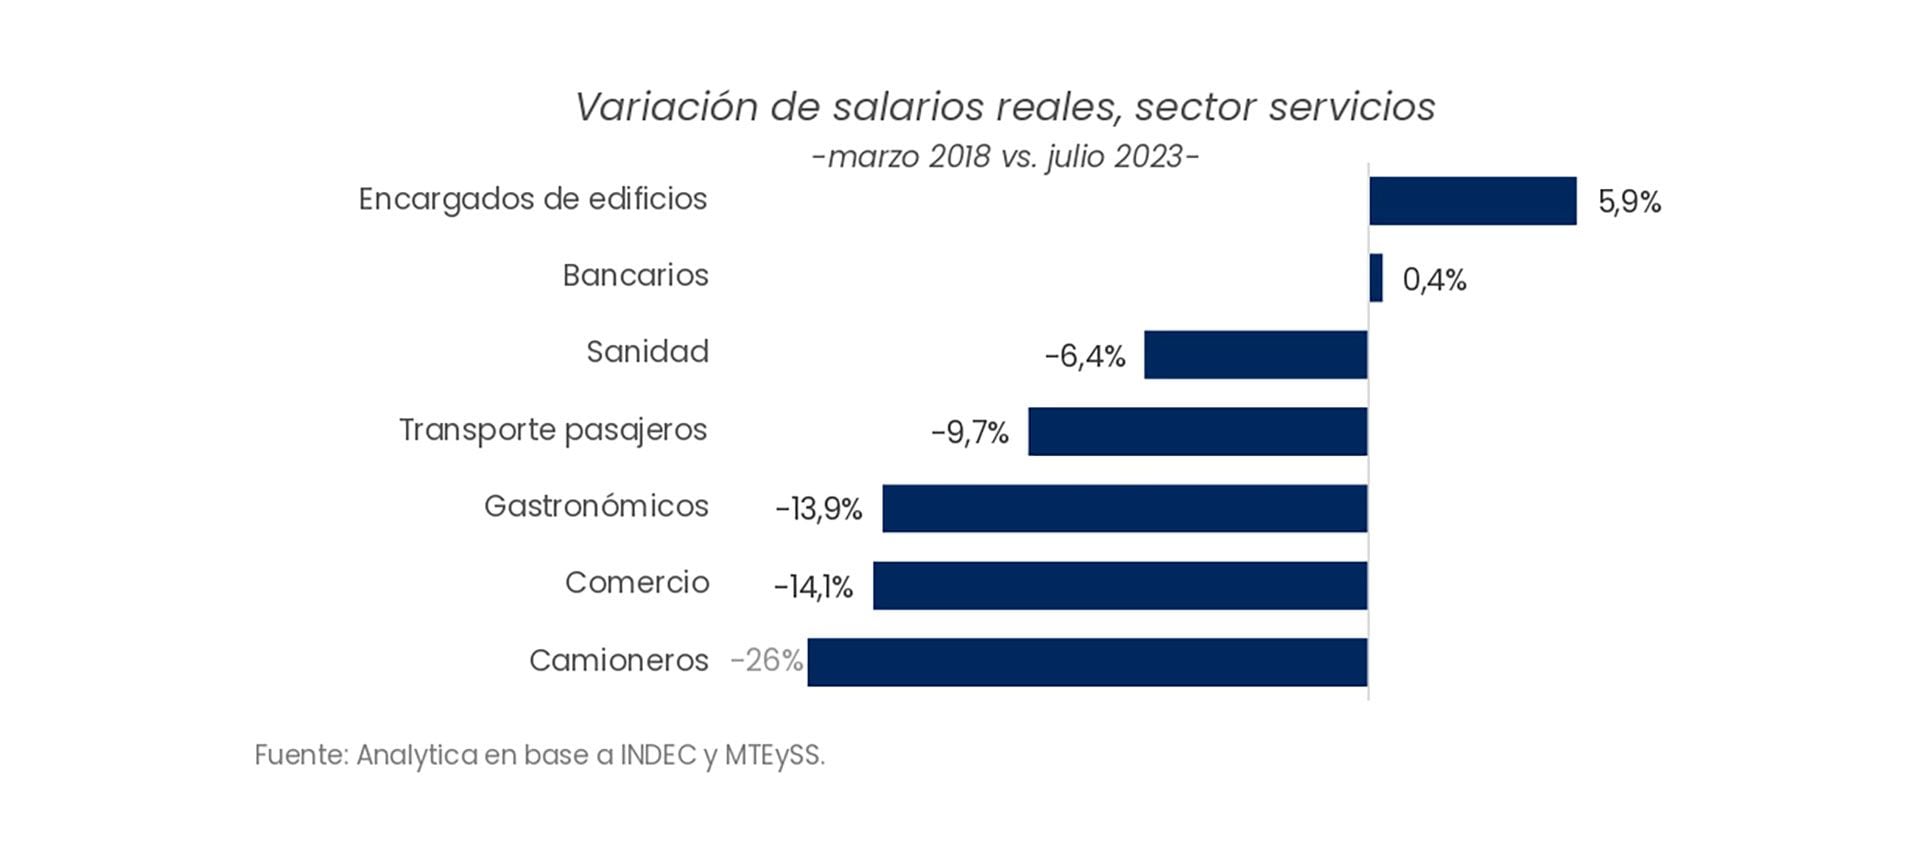 Variación de salarios reales, sector servicios -marzo 2018 vs. julio 2023-